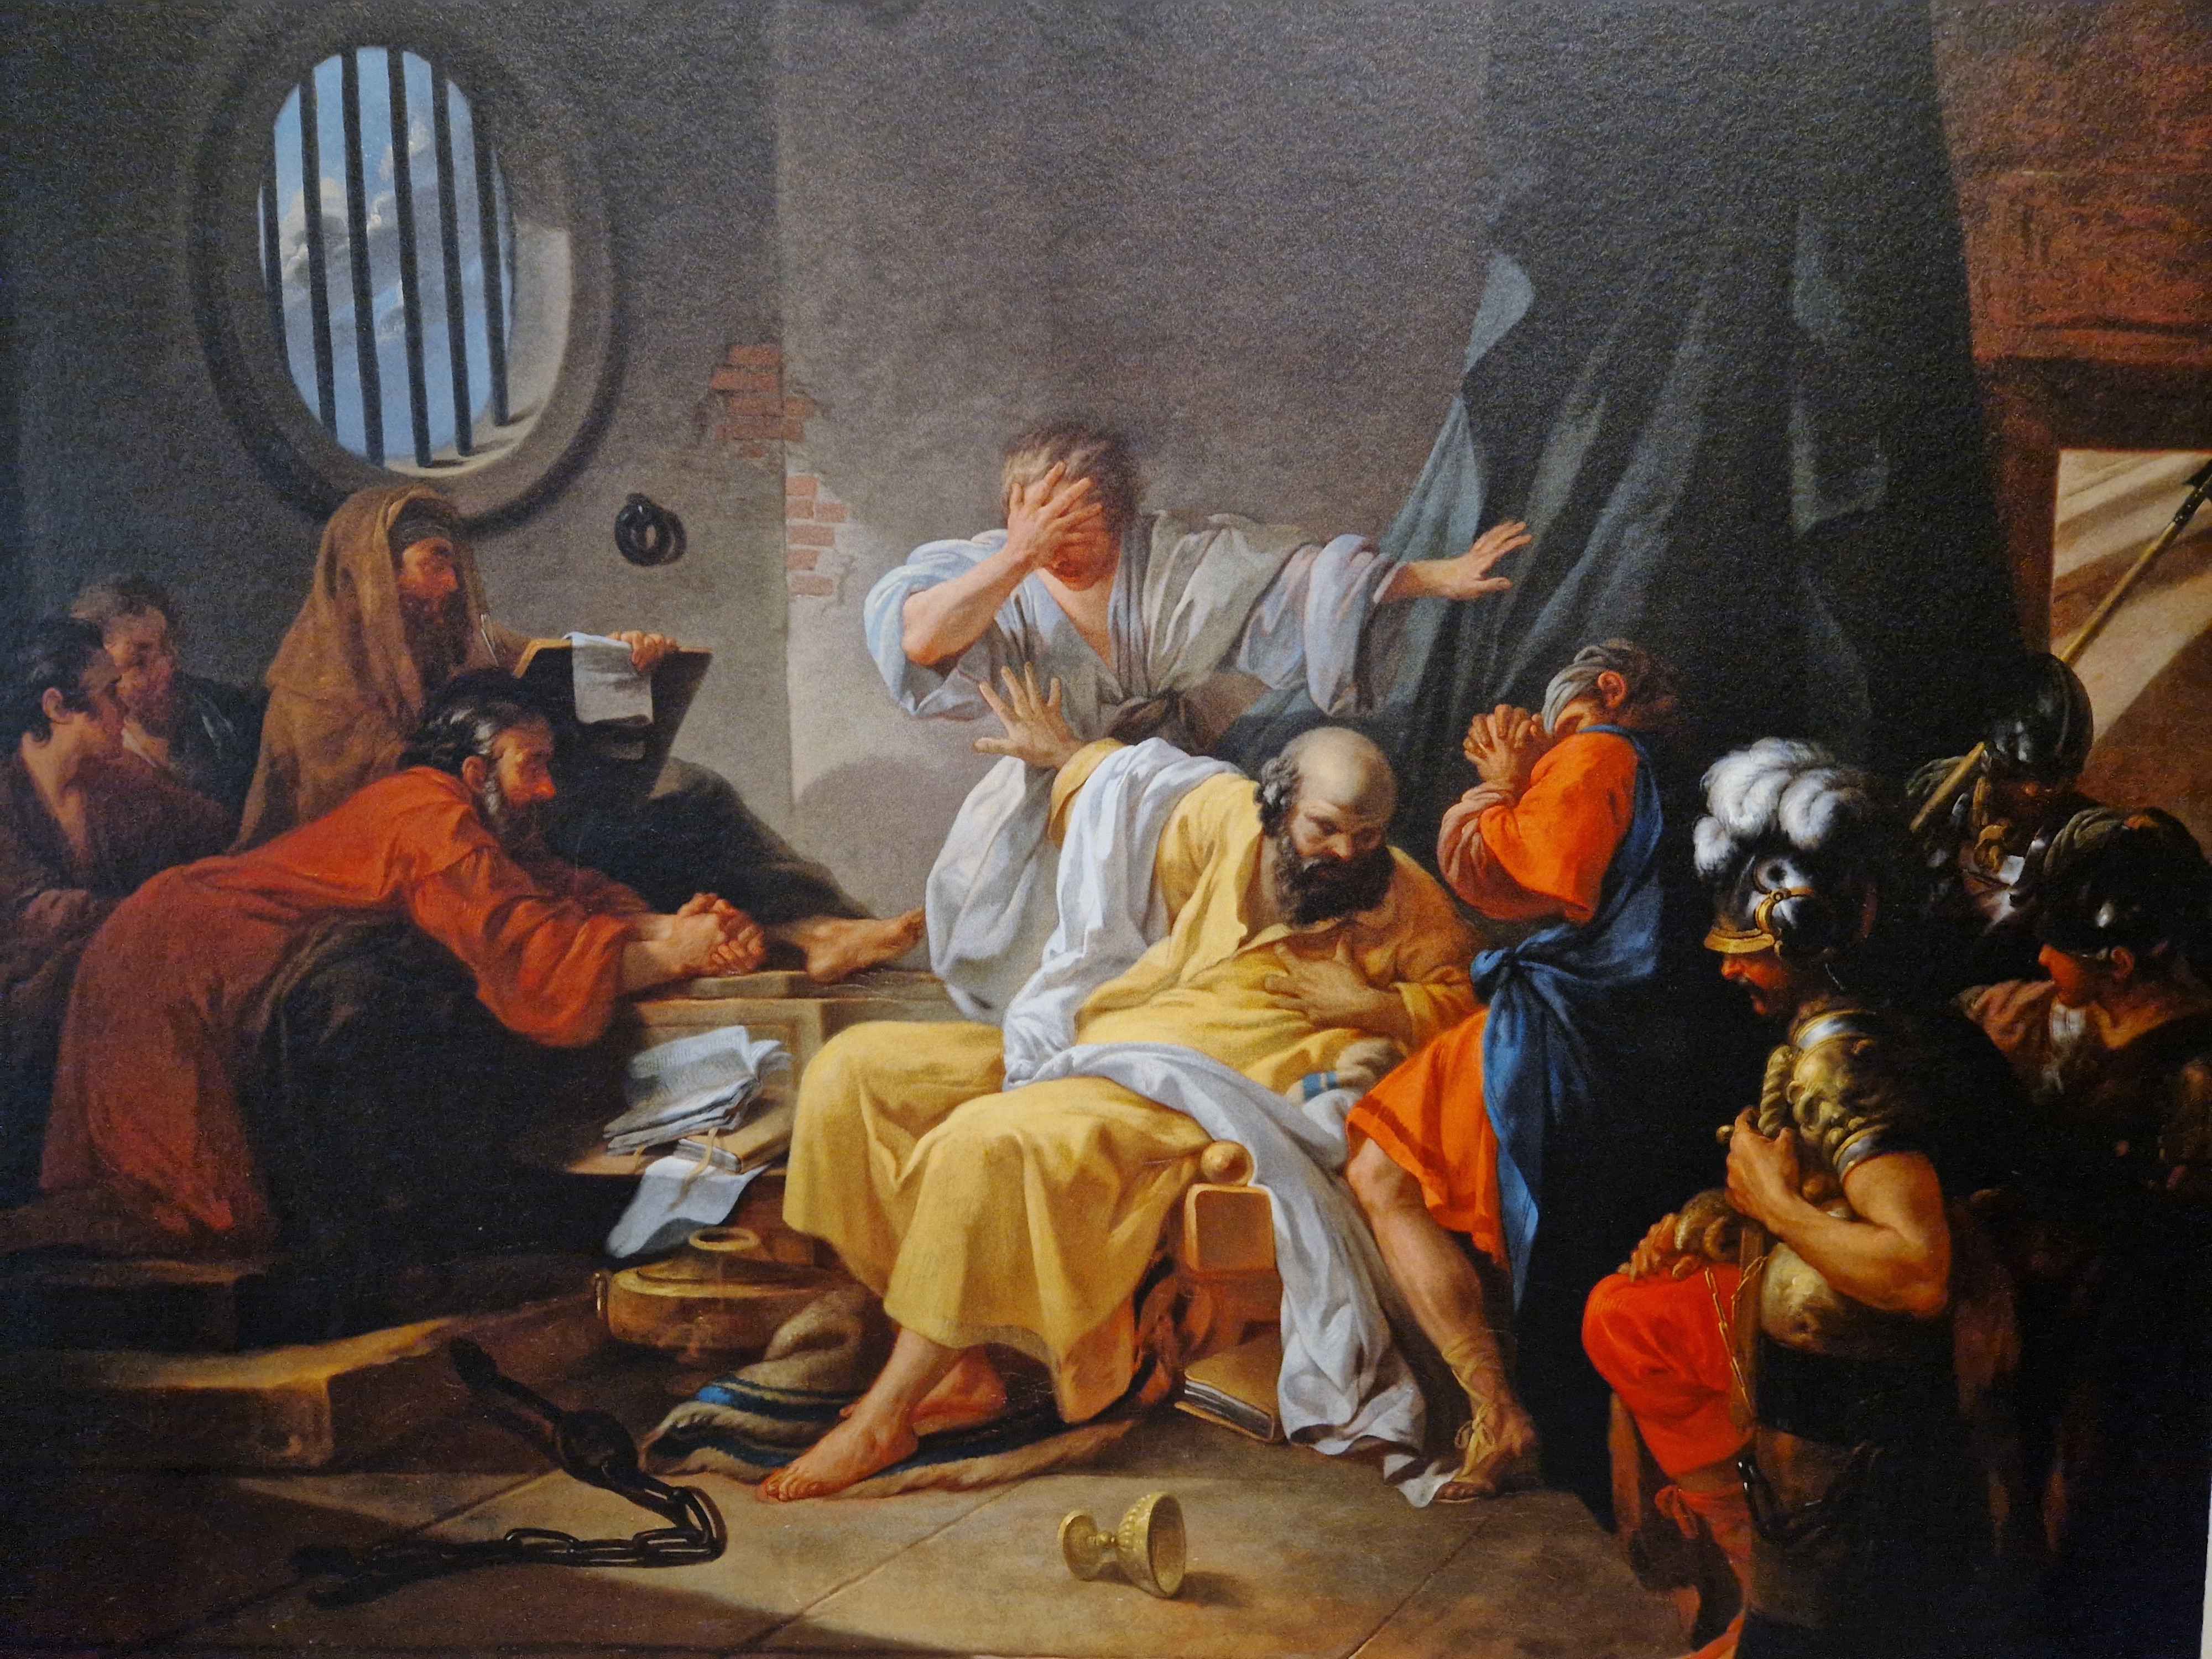 Reproduction de La Mort de Socrate, de Jacques de Saint-Quentin. 1762 - Huile sur toile. ActuaLitté.